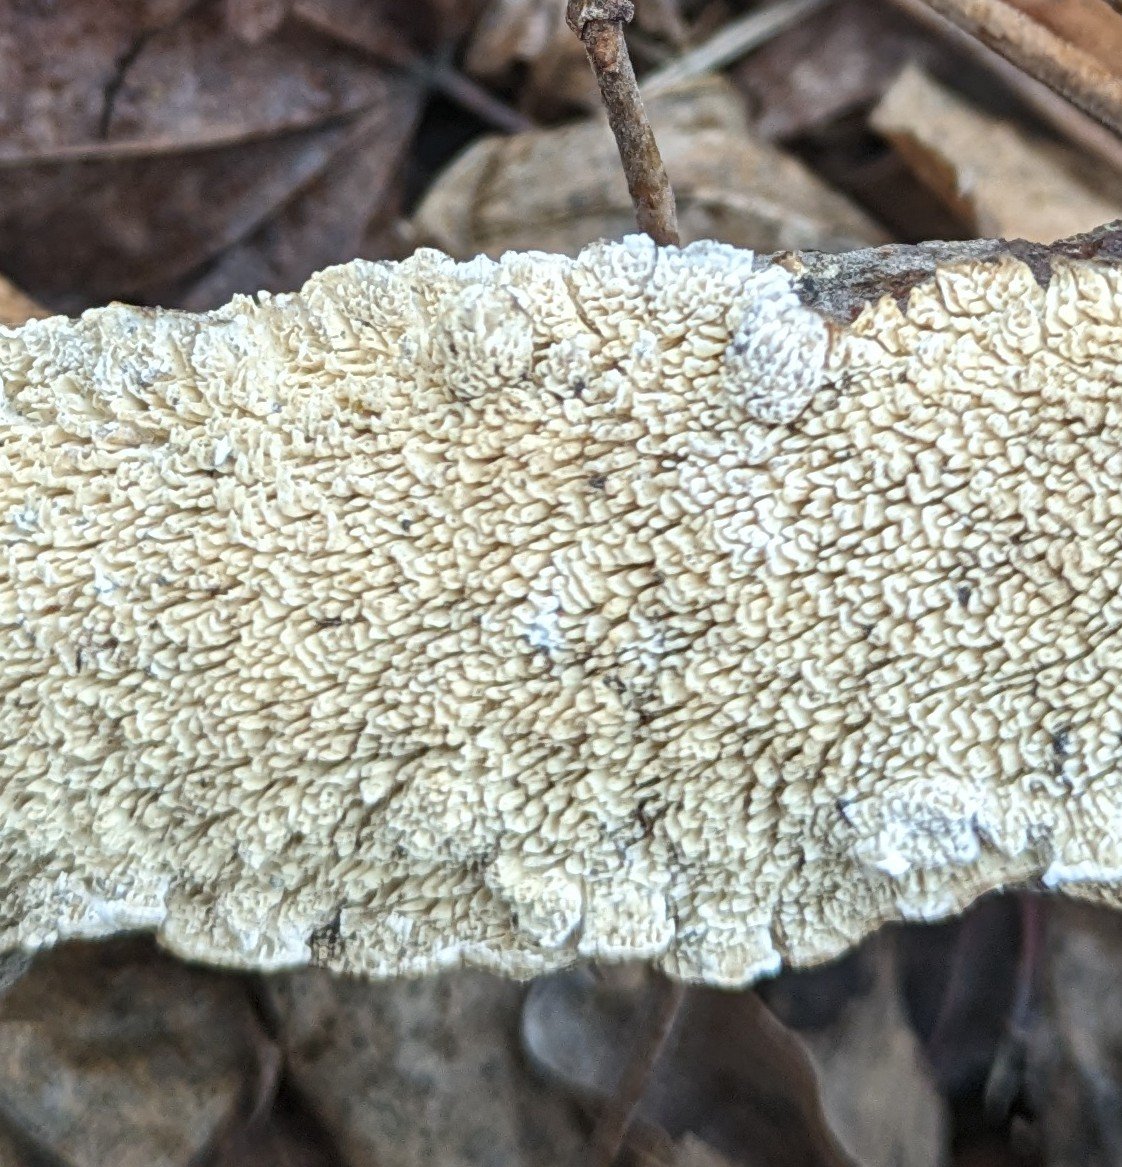 Furry-looking Milk-White Toothed Polypore (Irpex lacteus) mushroom #mushroom #fungi #milk #newyork